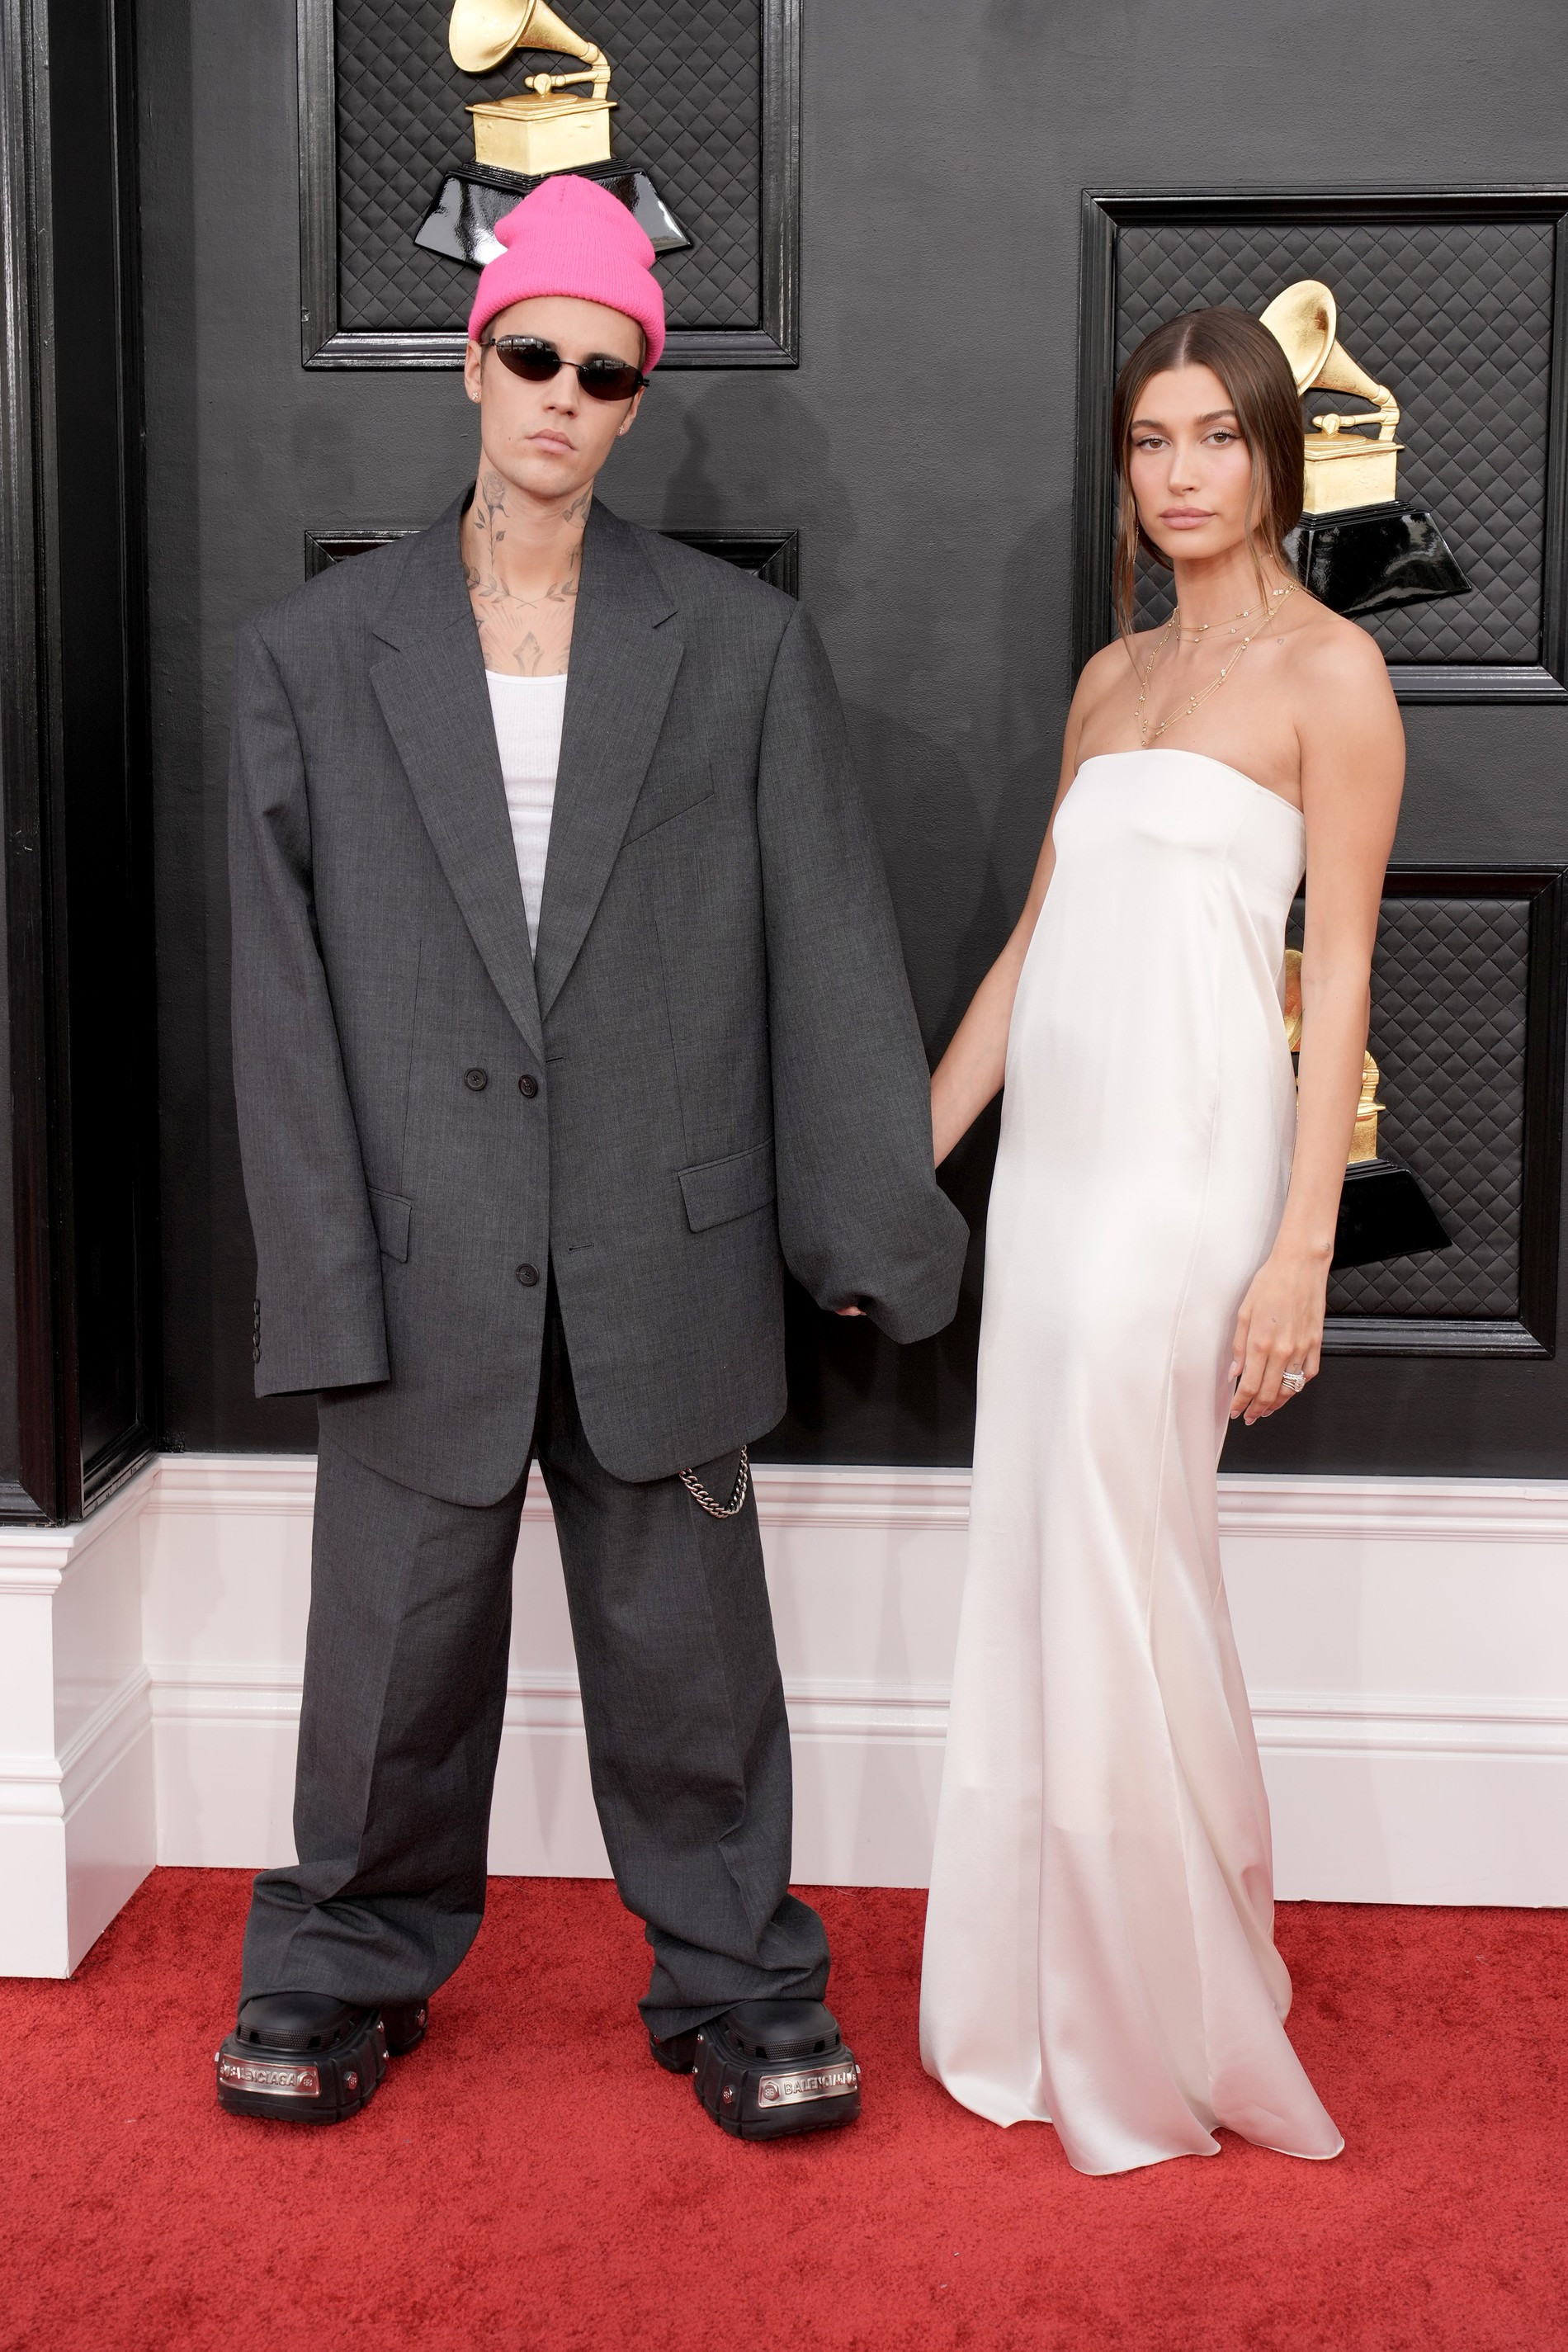 Джастин (в Balenciaga) и Хейли (в Saint Laurent) Бибер
Фото © Getty Images